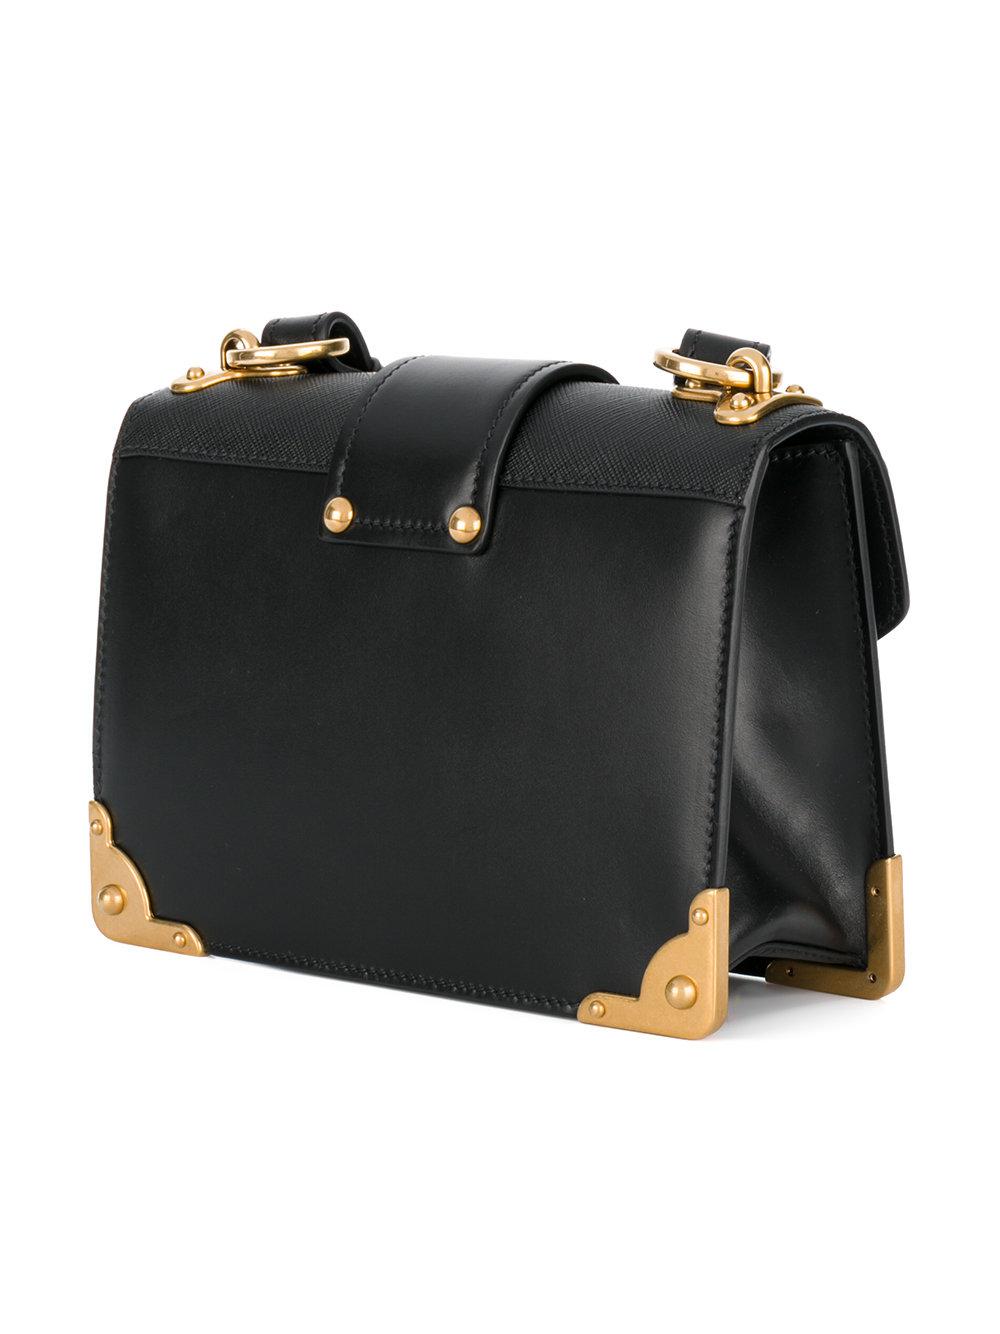 Prada Leather Cahier Lion-embellished Shoulder Bag in Black - Lyst